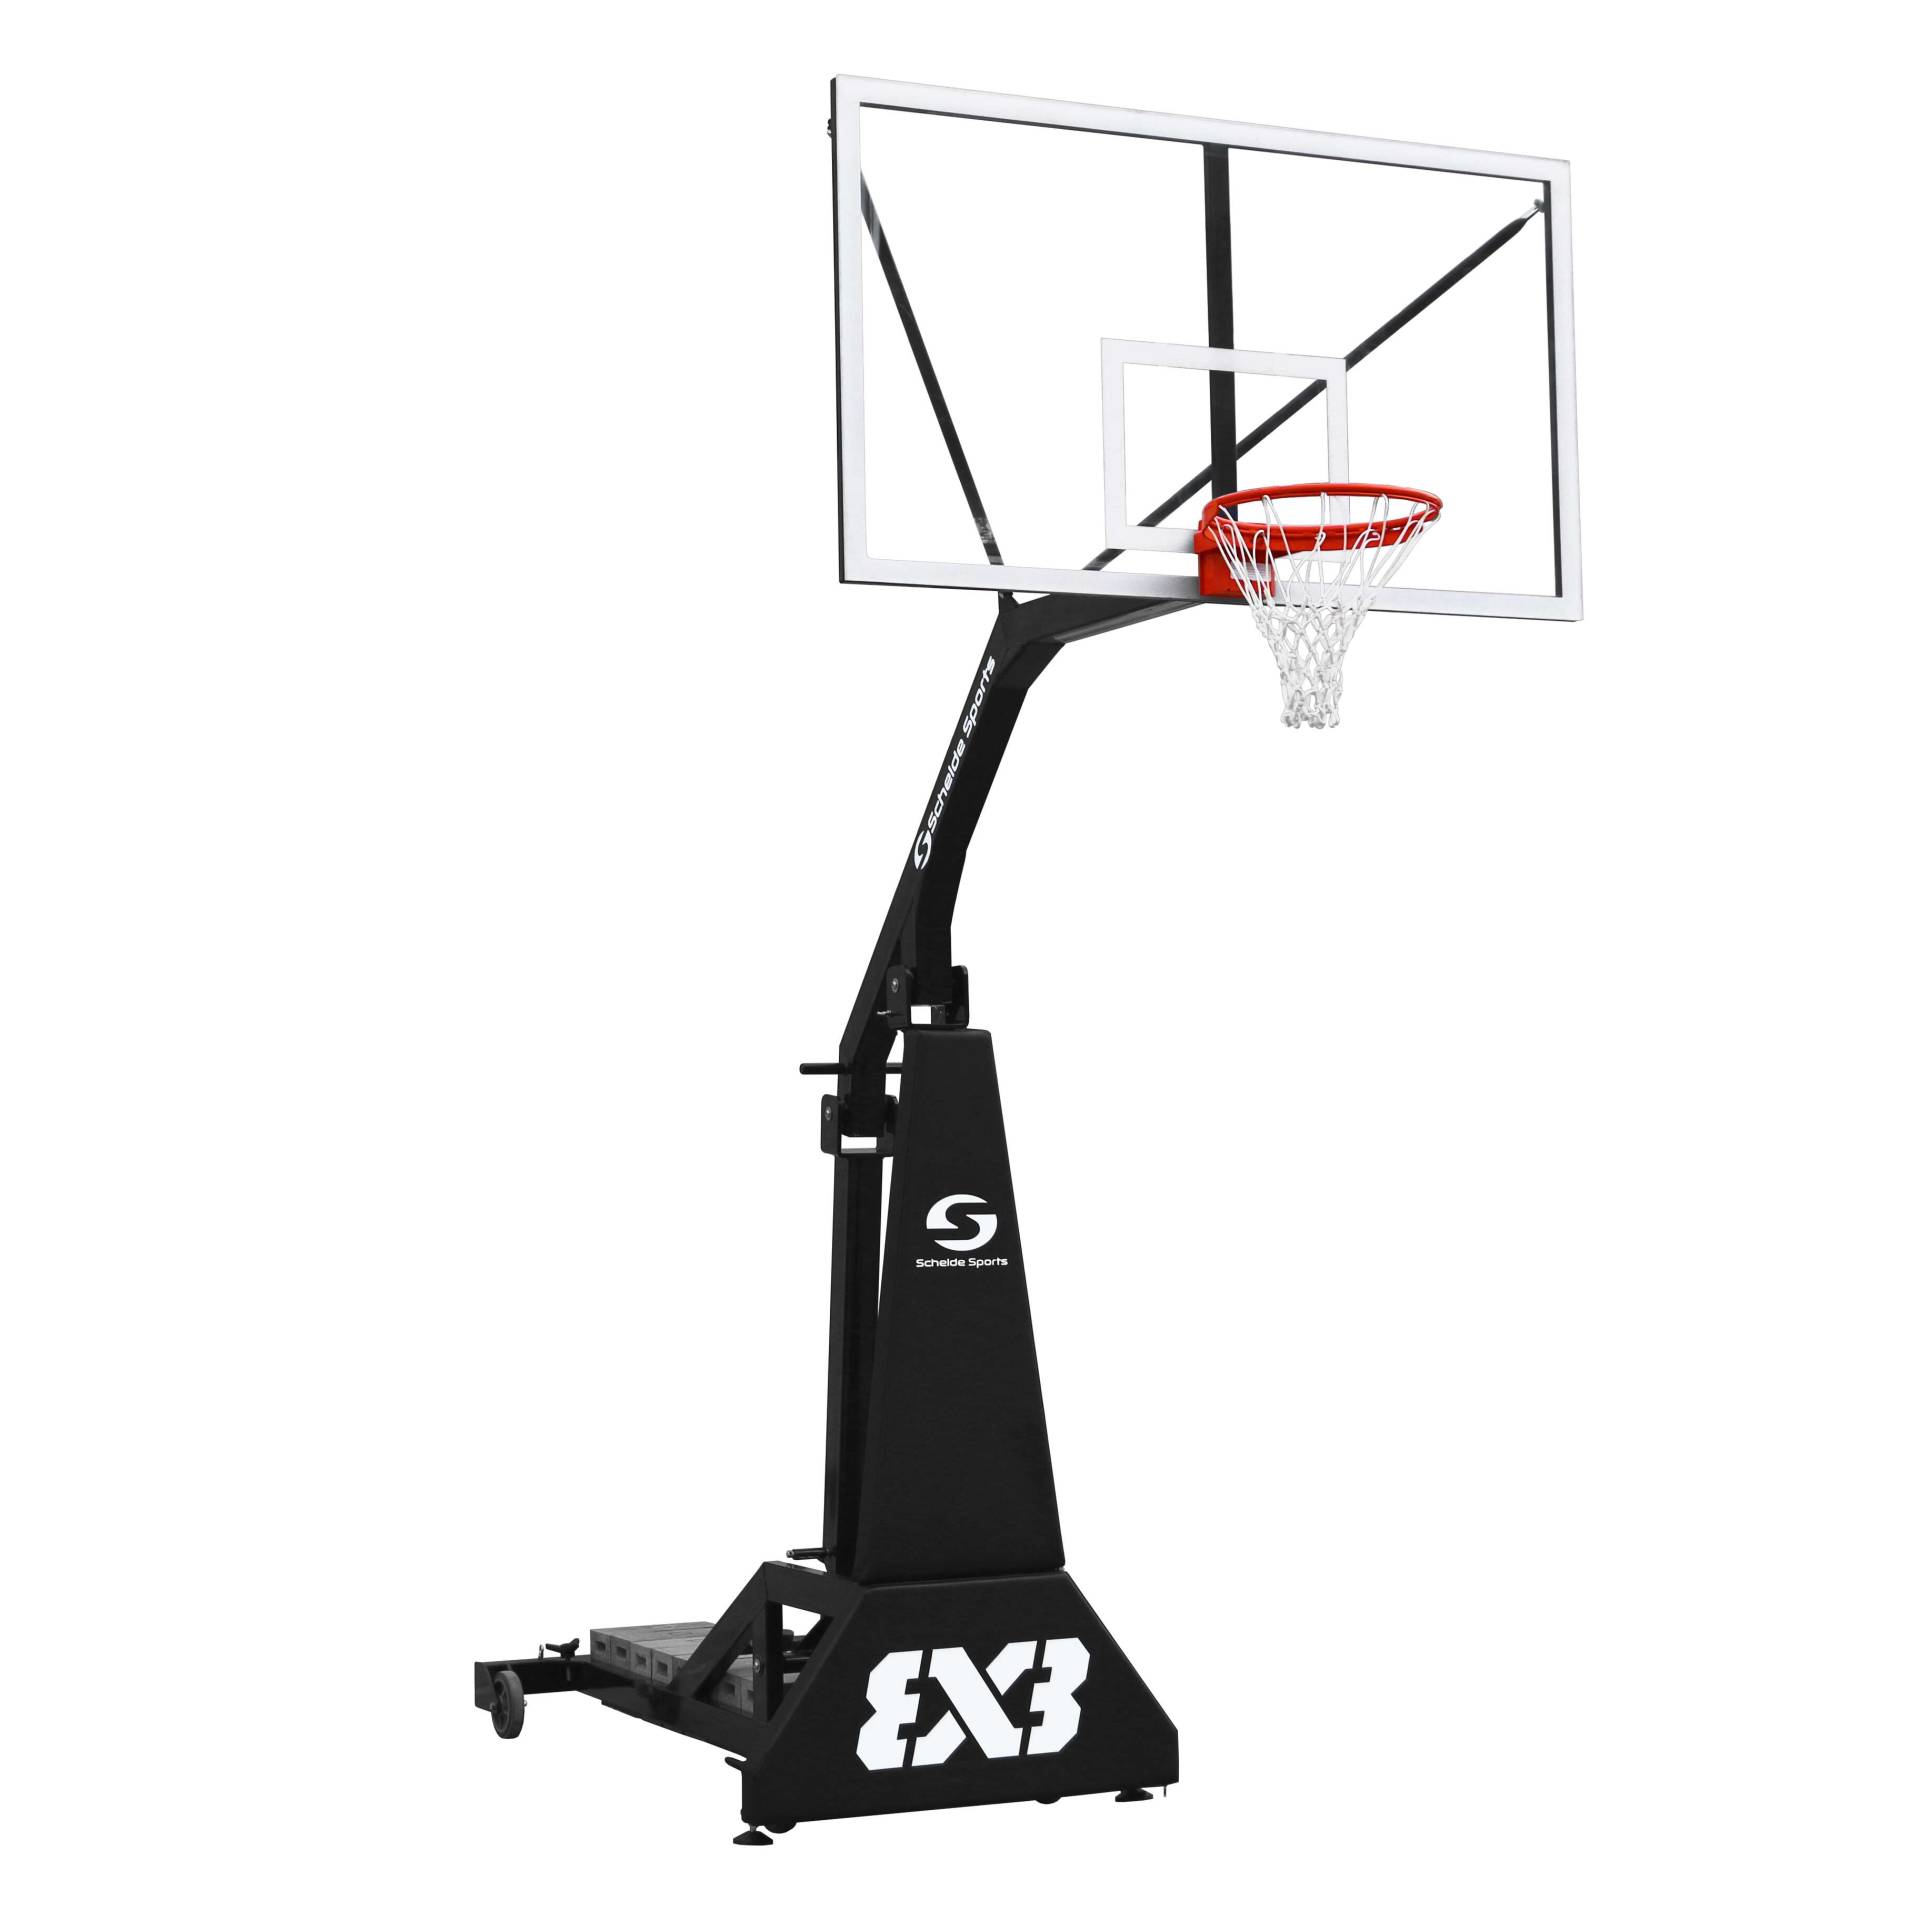 Schelde Basketballanlage "3x3 Street Slammer" von Schelde